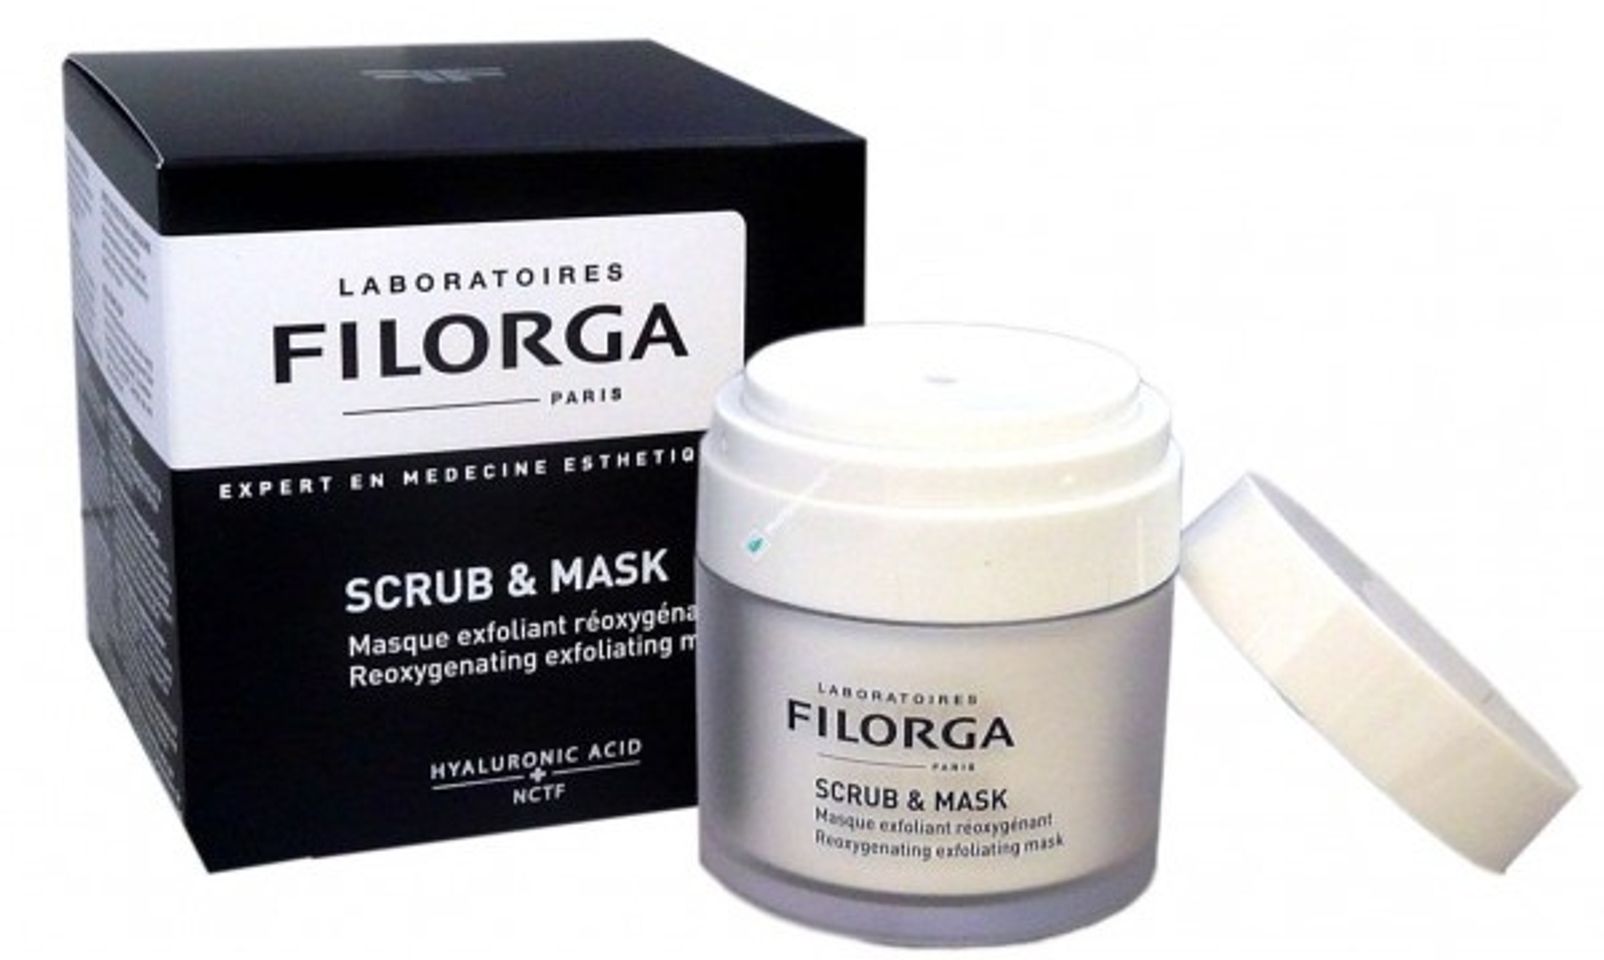 Filorga Scrub And Mask được sáng tạo nên với 2 tác dụng chính là tẩy da chết và tạo bọt oxygen thải độc